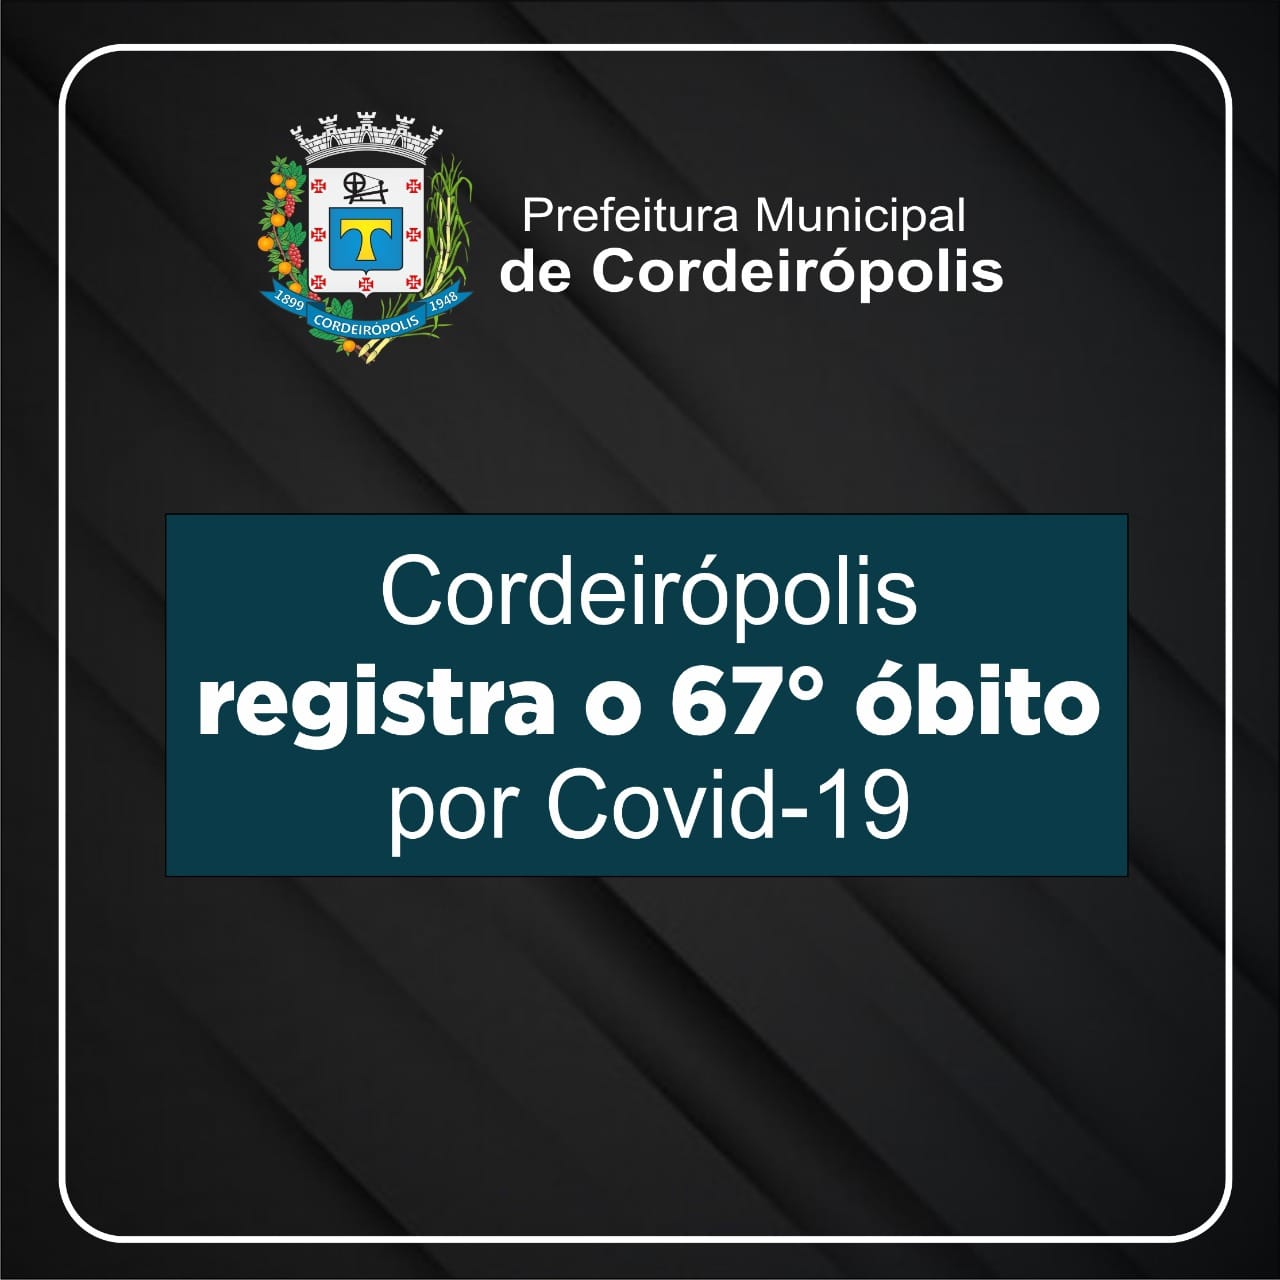 Cordeirópolis registra duas mortes por Covid-19 em um único dia